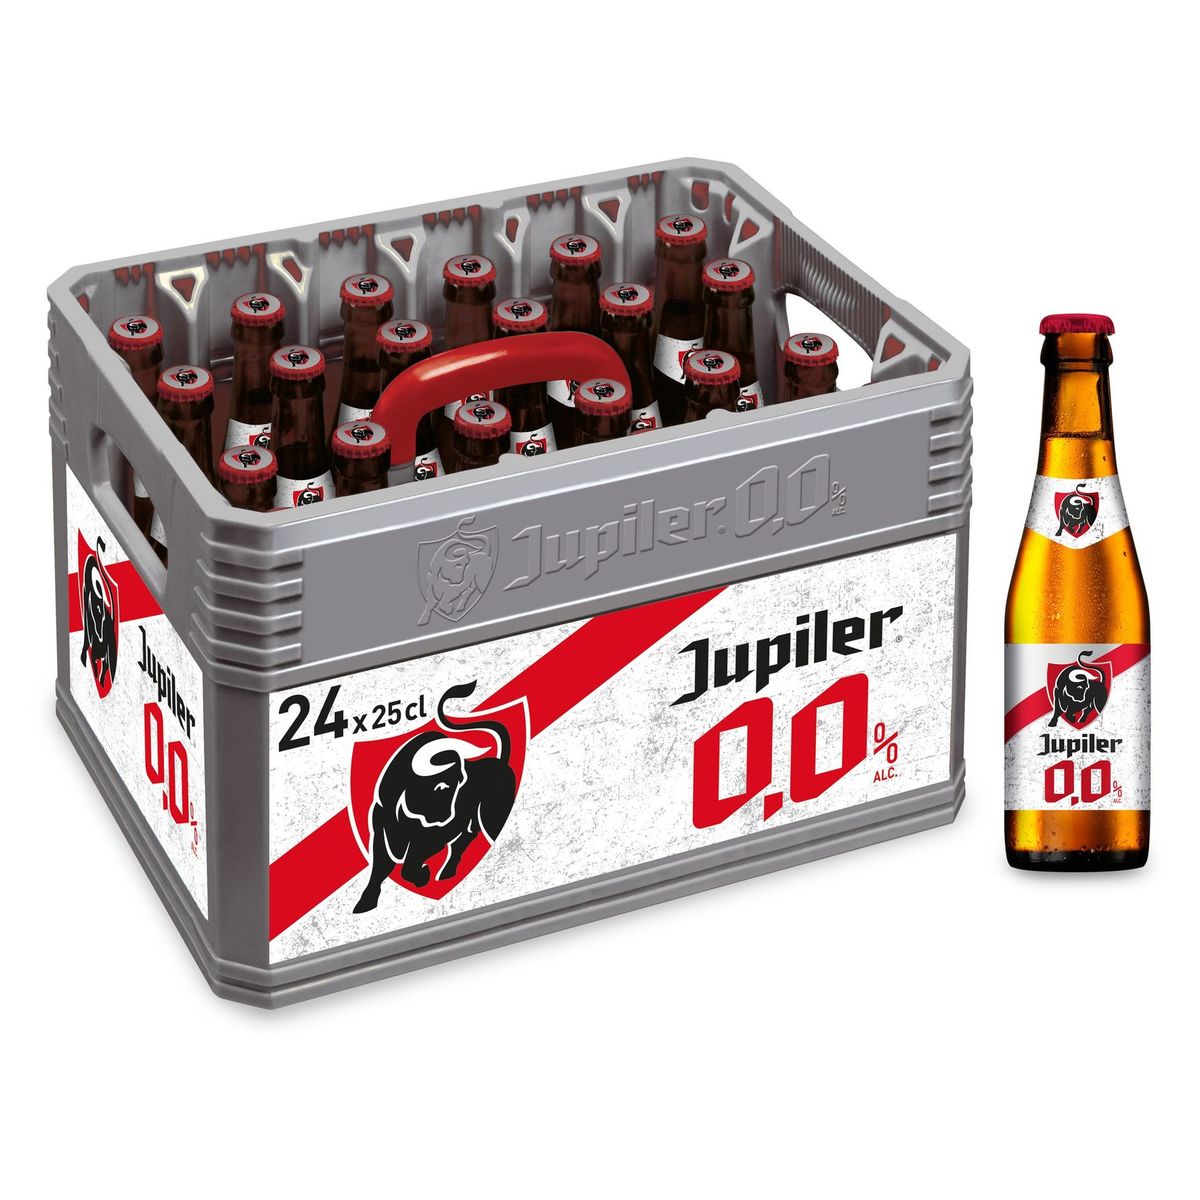 Jupiler 0.0% Alc. Beer Krat 24 x 25 cl